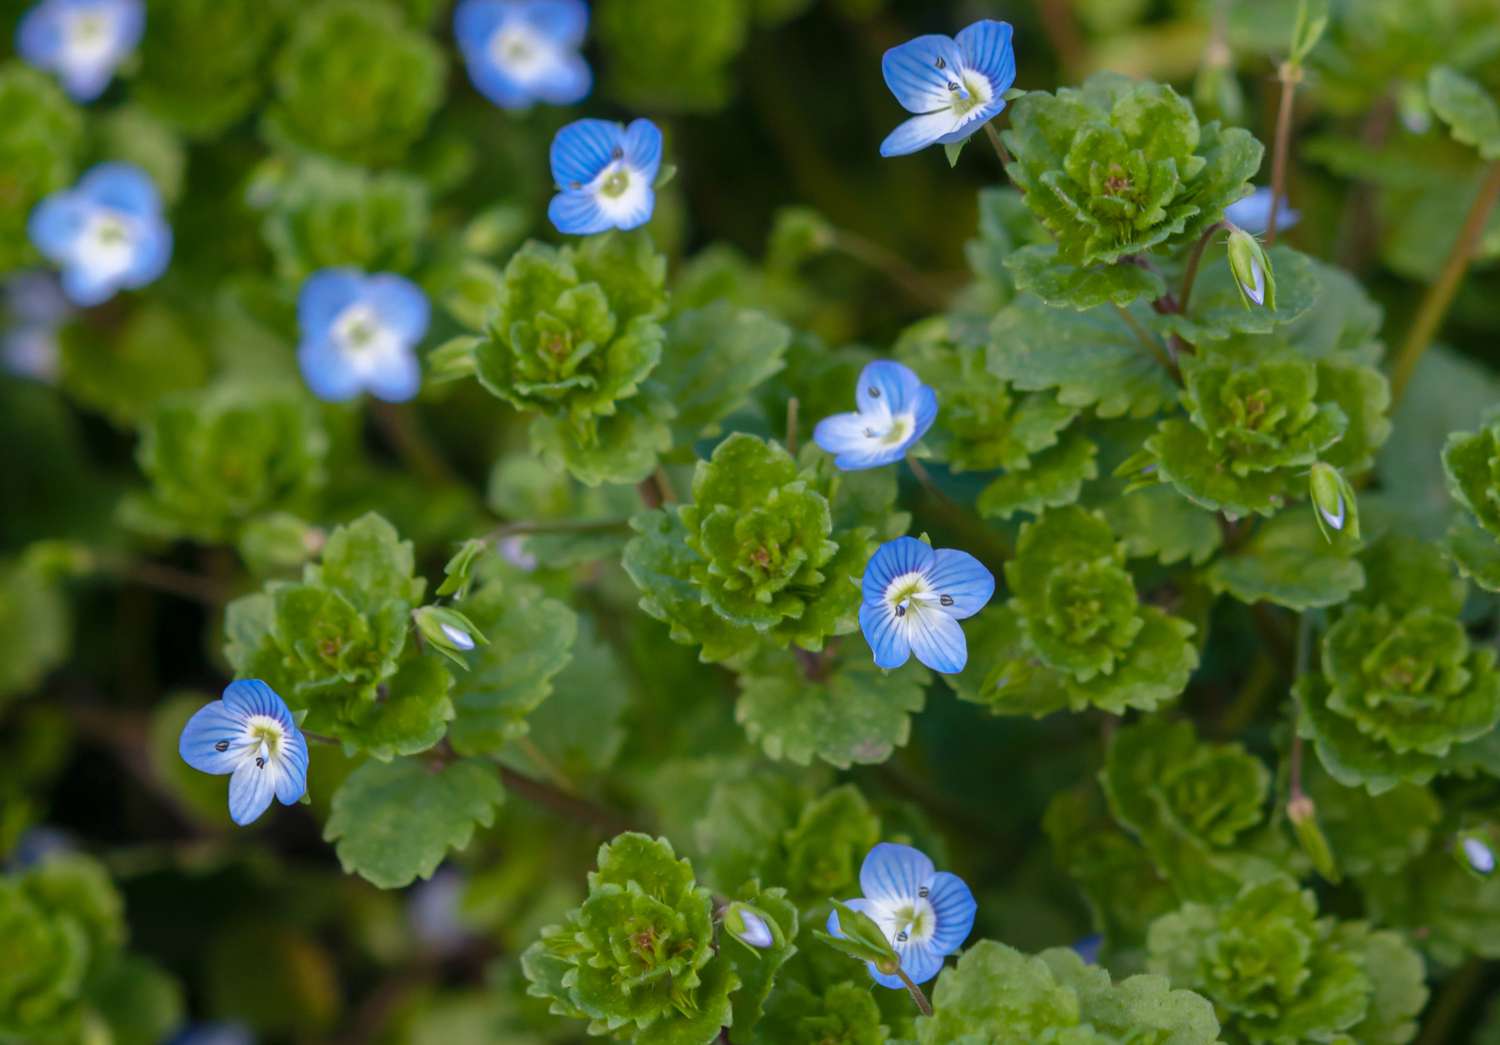 Kriechender Ehrenpreis mit schalenförmigen Blättern, die mit kleinen blauen Blüten besetzt sind, Nahaufnahme